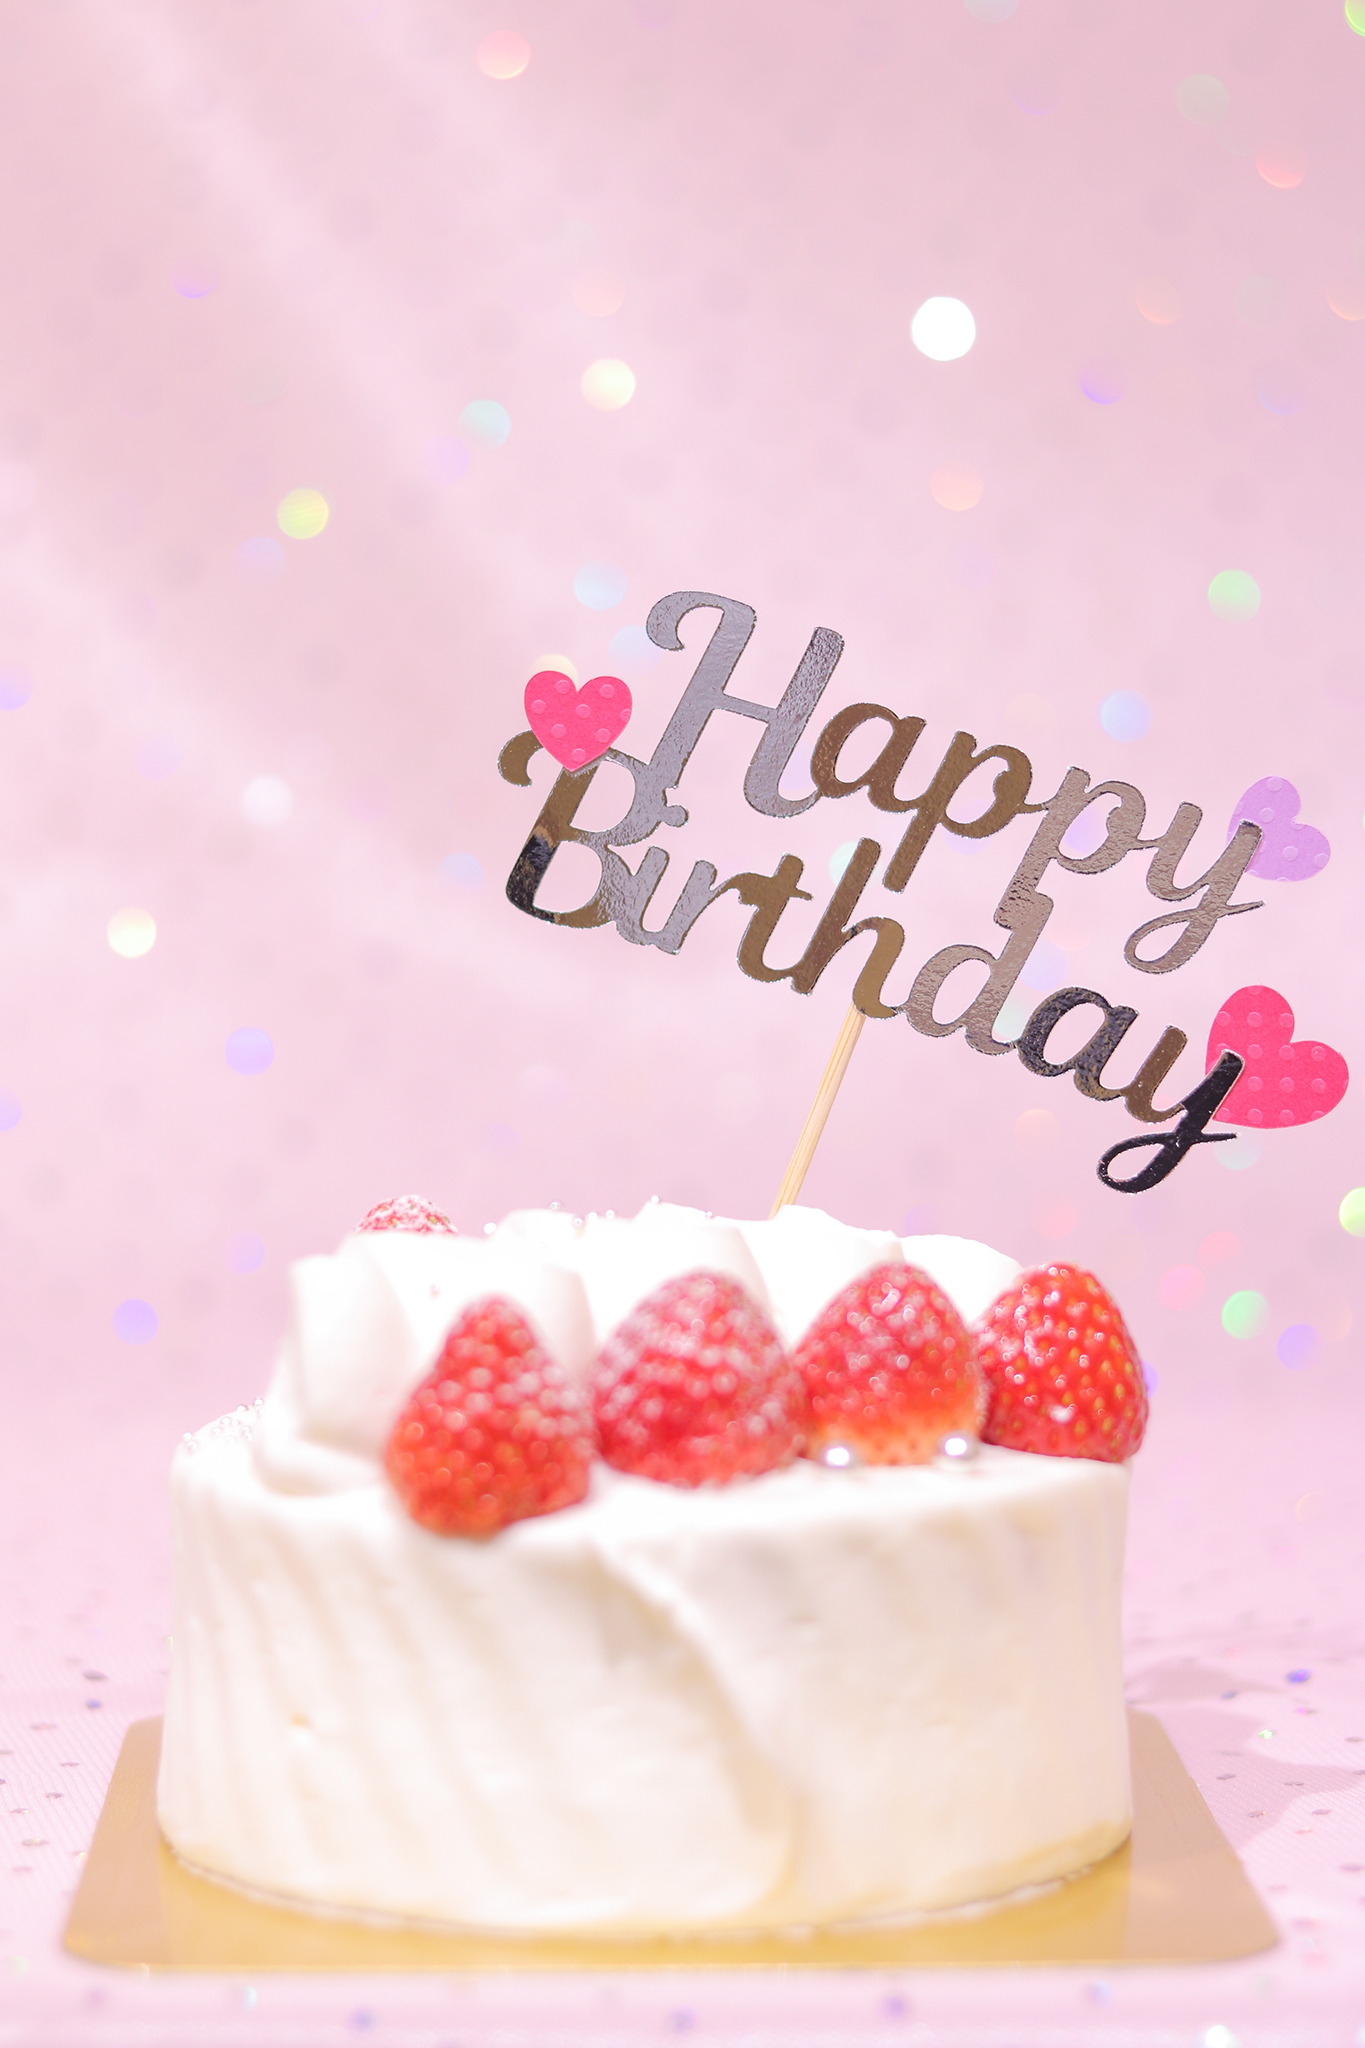 かわいい誕生日画像 豪華な誕生日ケーキとハートが可愛いケーキトッパー 縦長 のフリー画像 おしゃれなフリー写真素材 Girly Drop